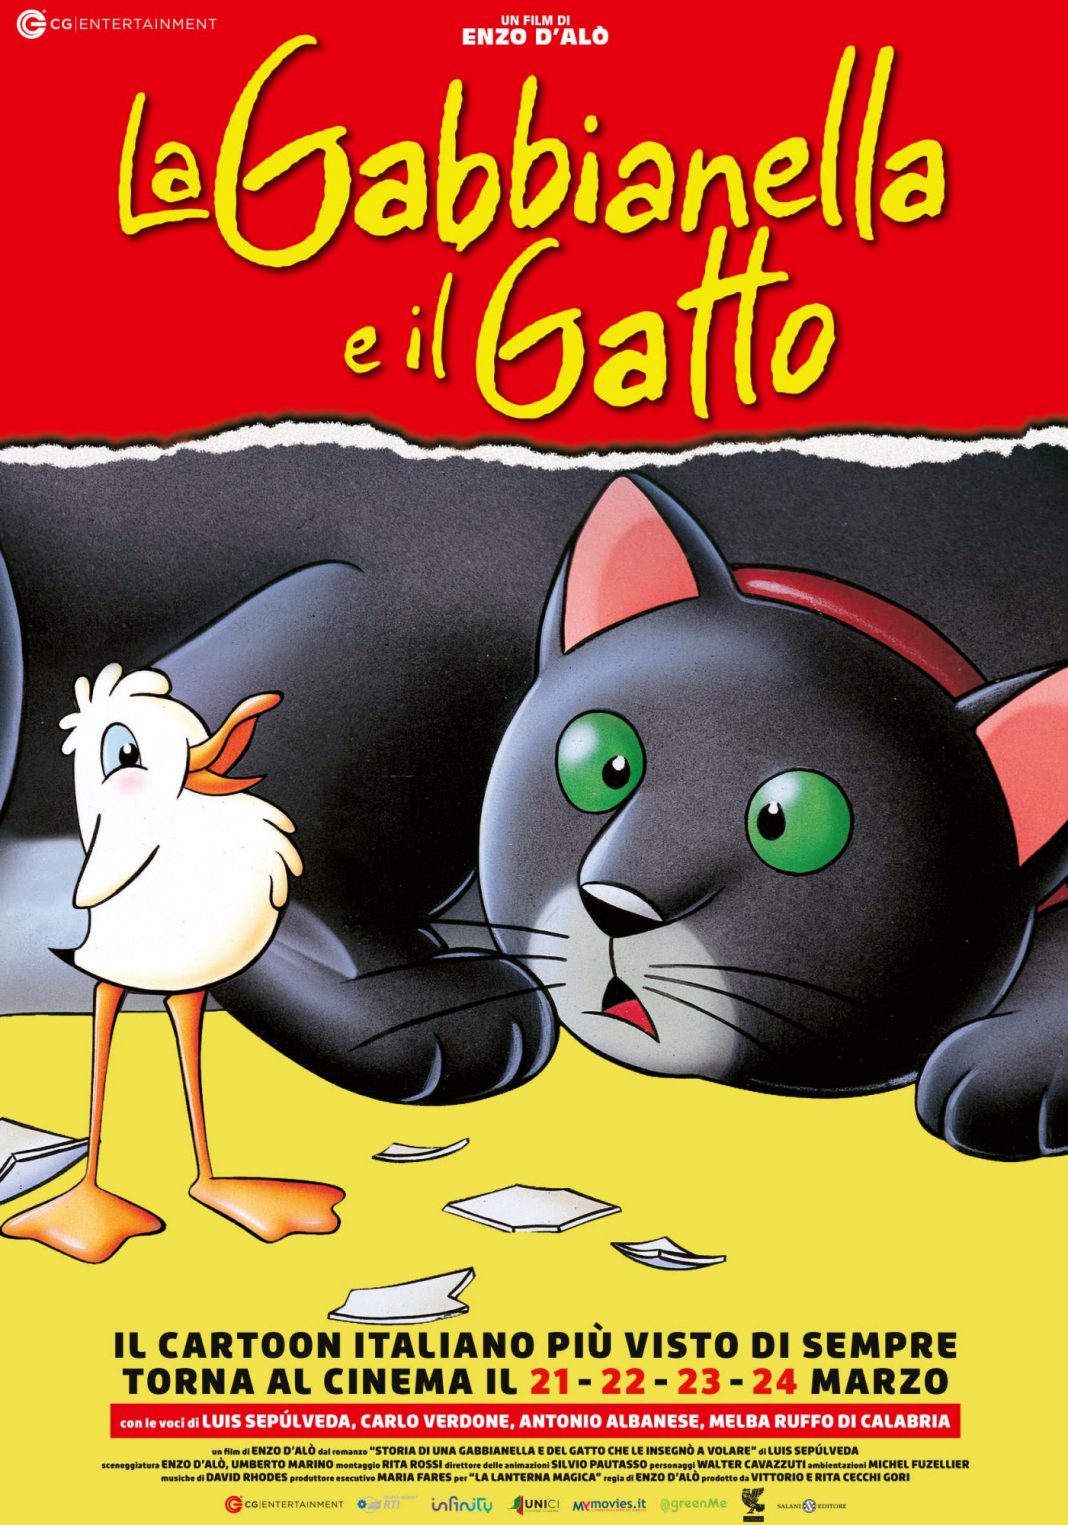 La gabbianella e il gatto trailer italiano del film di Enzo D'Alò di ritorno nelle sale